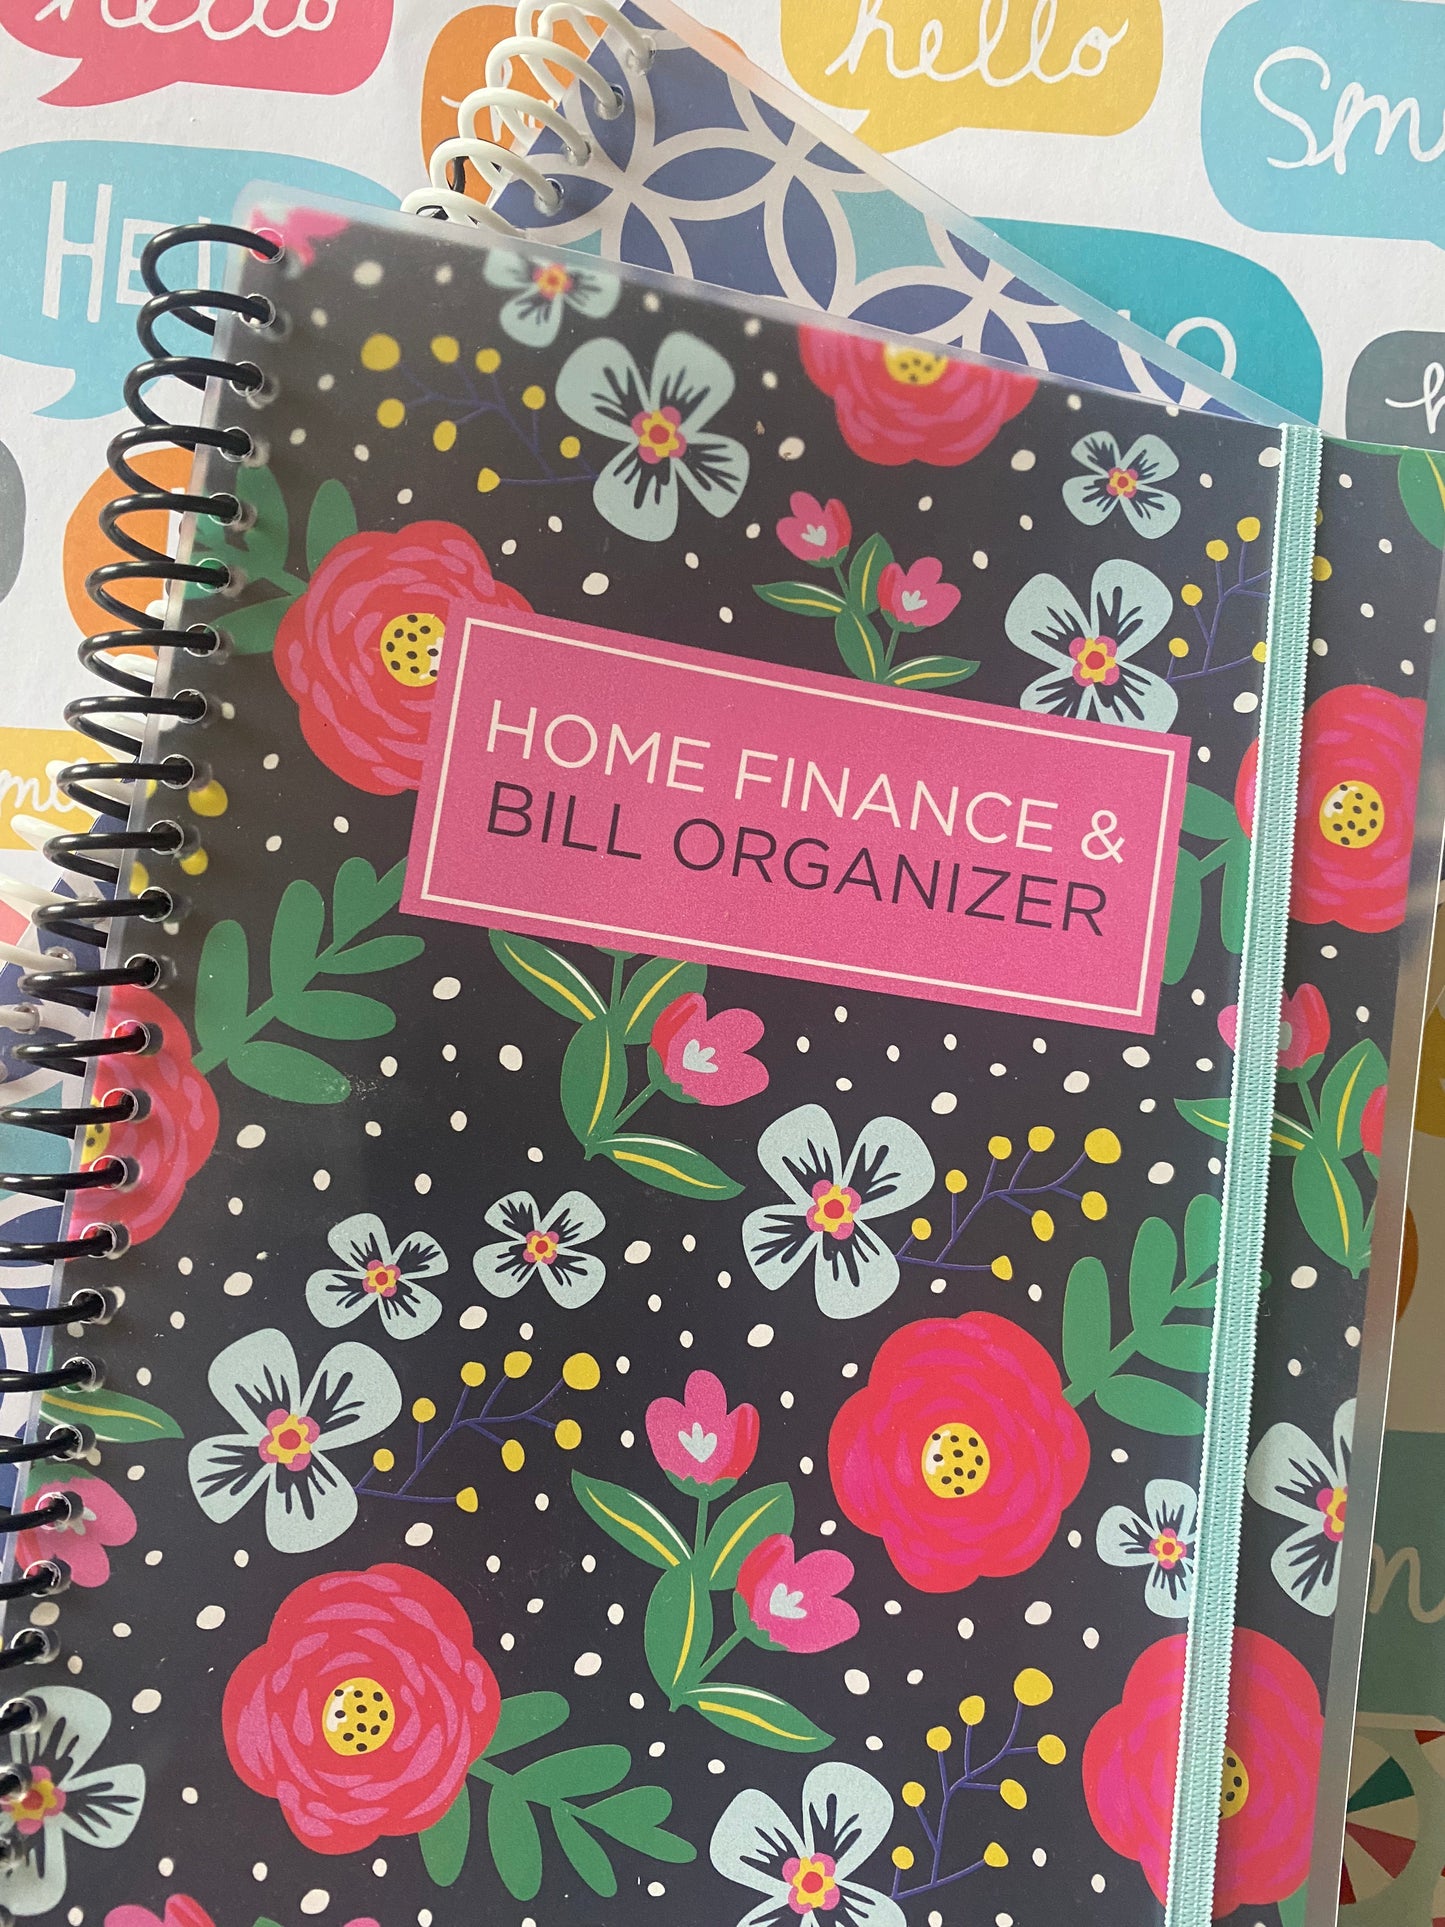 Bill Organizer (Home Finance) - Floral Pink